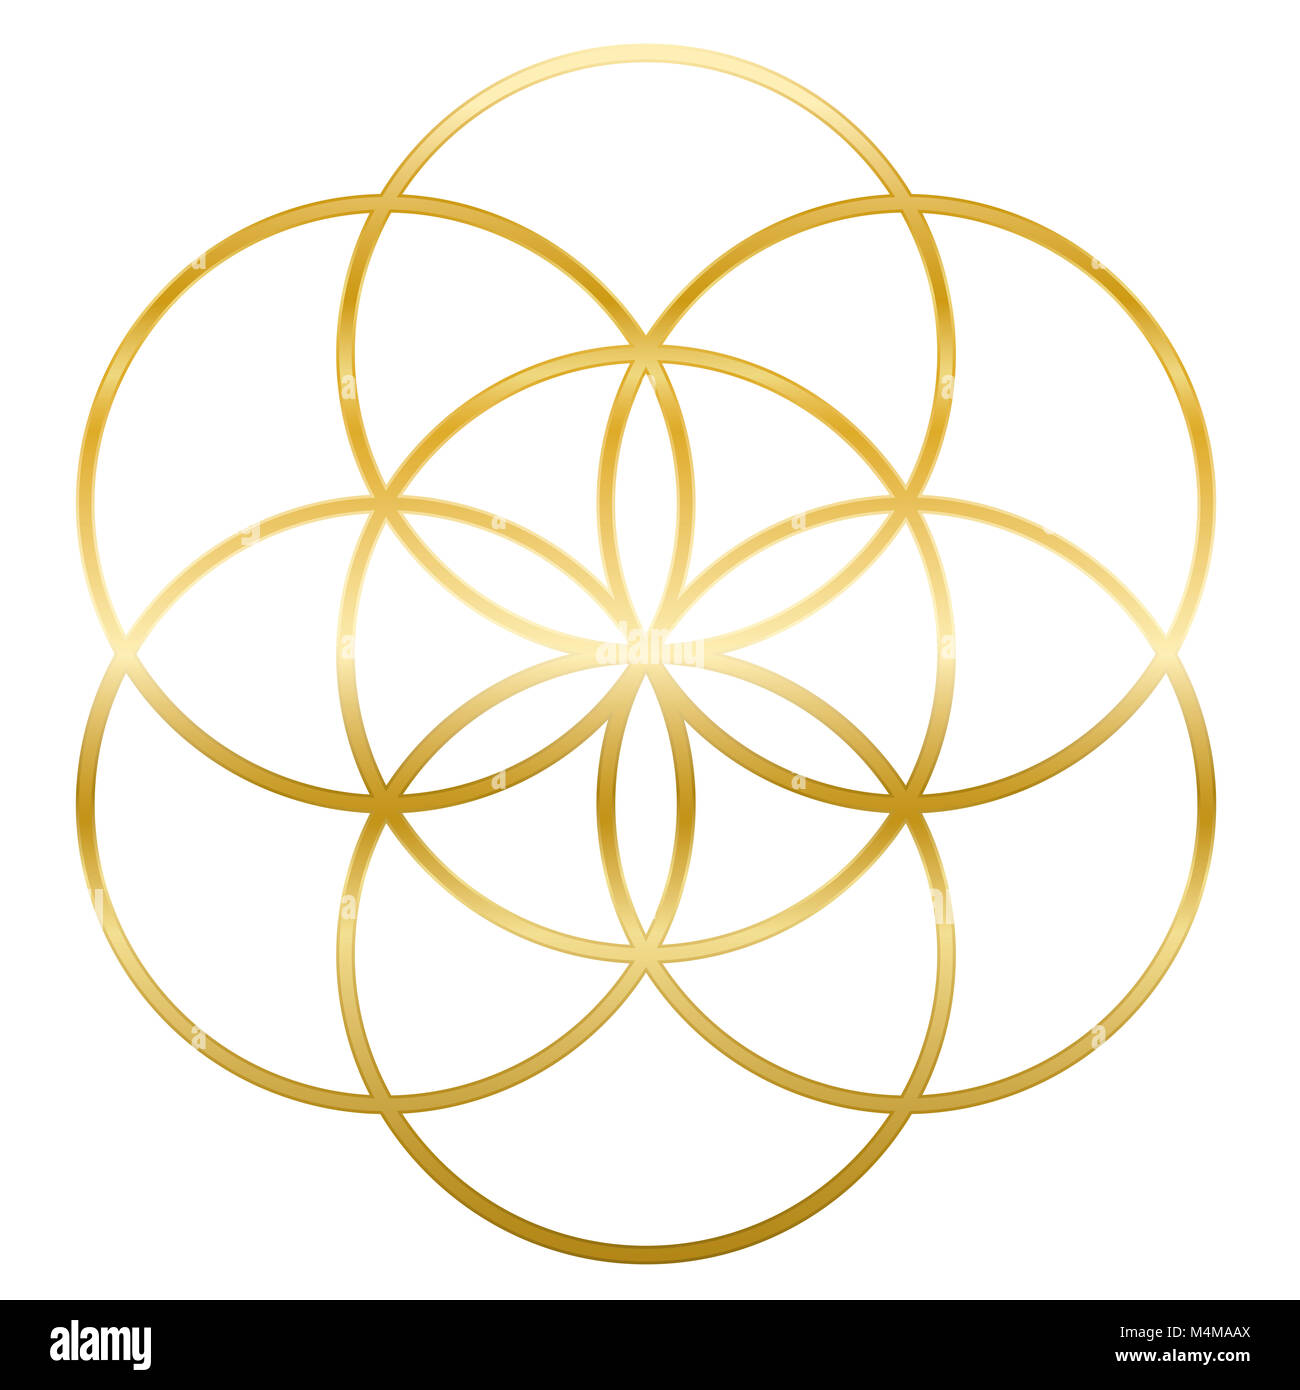 Golden semence de vie. Précurseur de Fleur de vie symbole. La figure géométrique unique, composée de sept cercles se chevauchant de même taille, formant le sy Banque D'Images